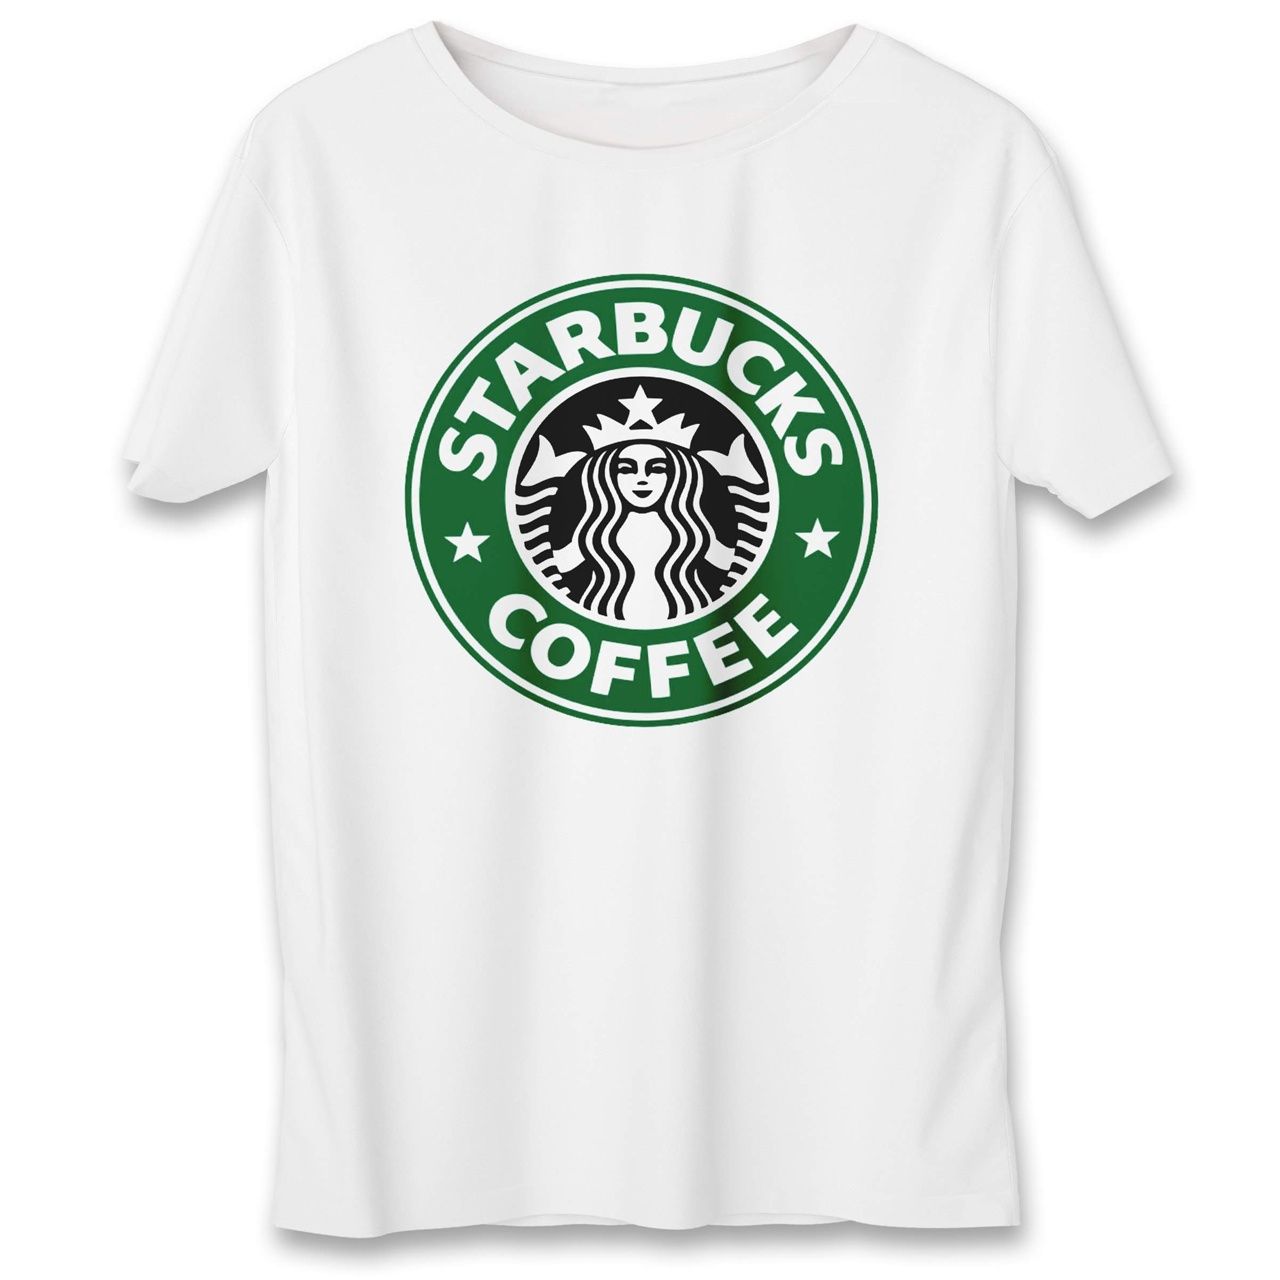 تی شرت به رسم طرح استارباکس کد 563 -  - 1